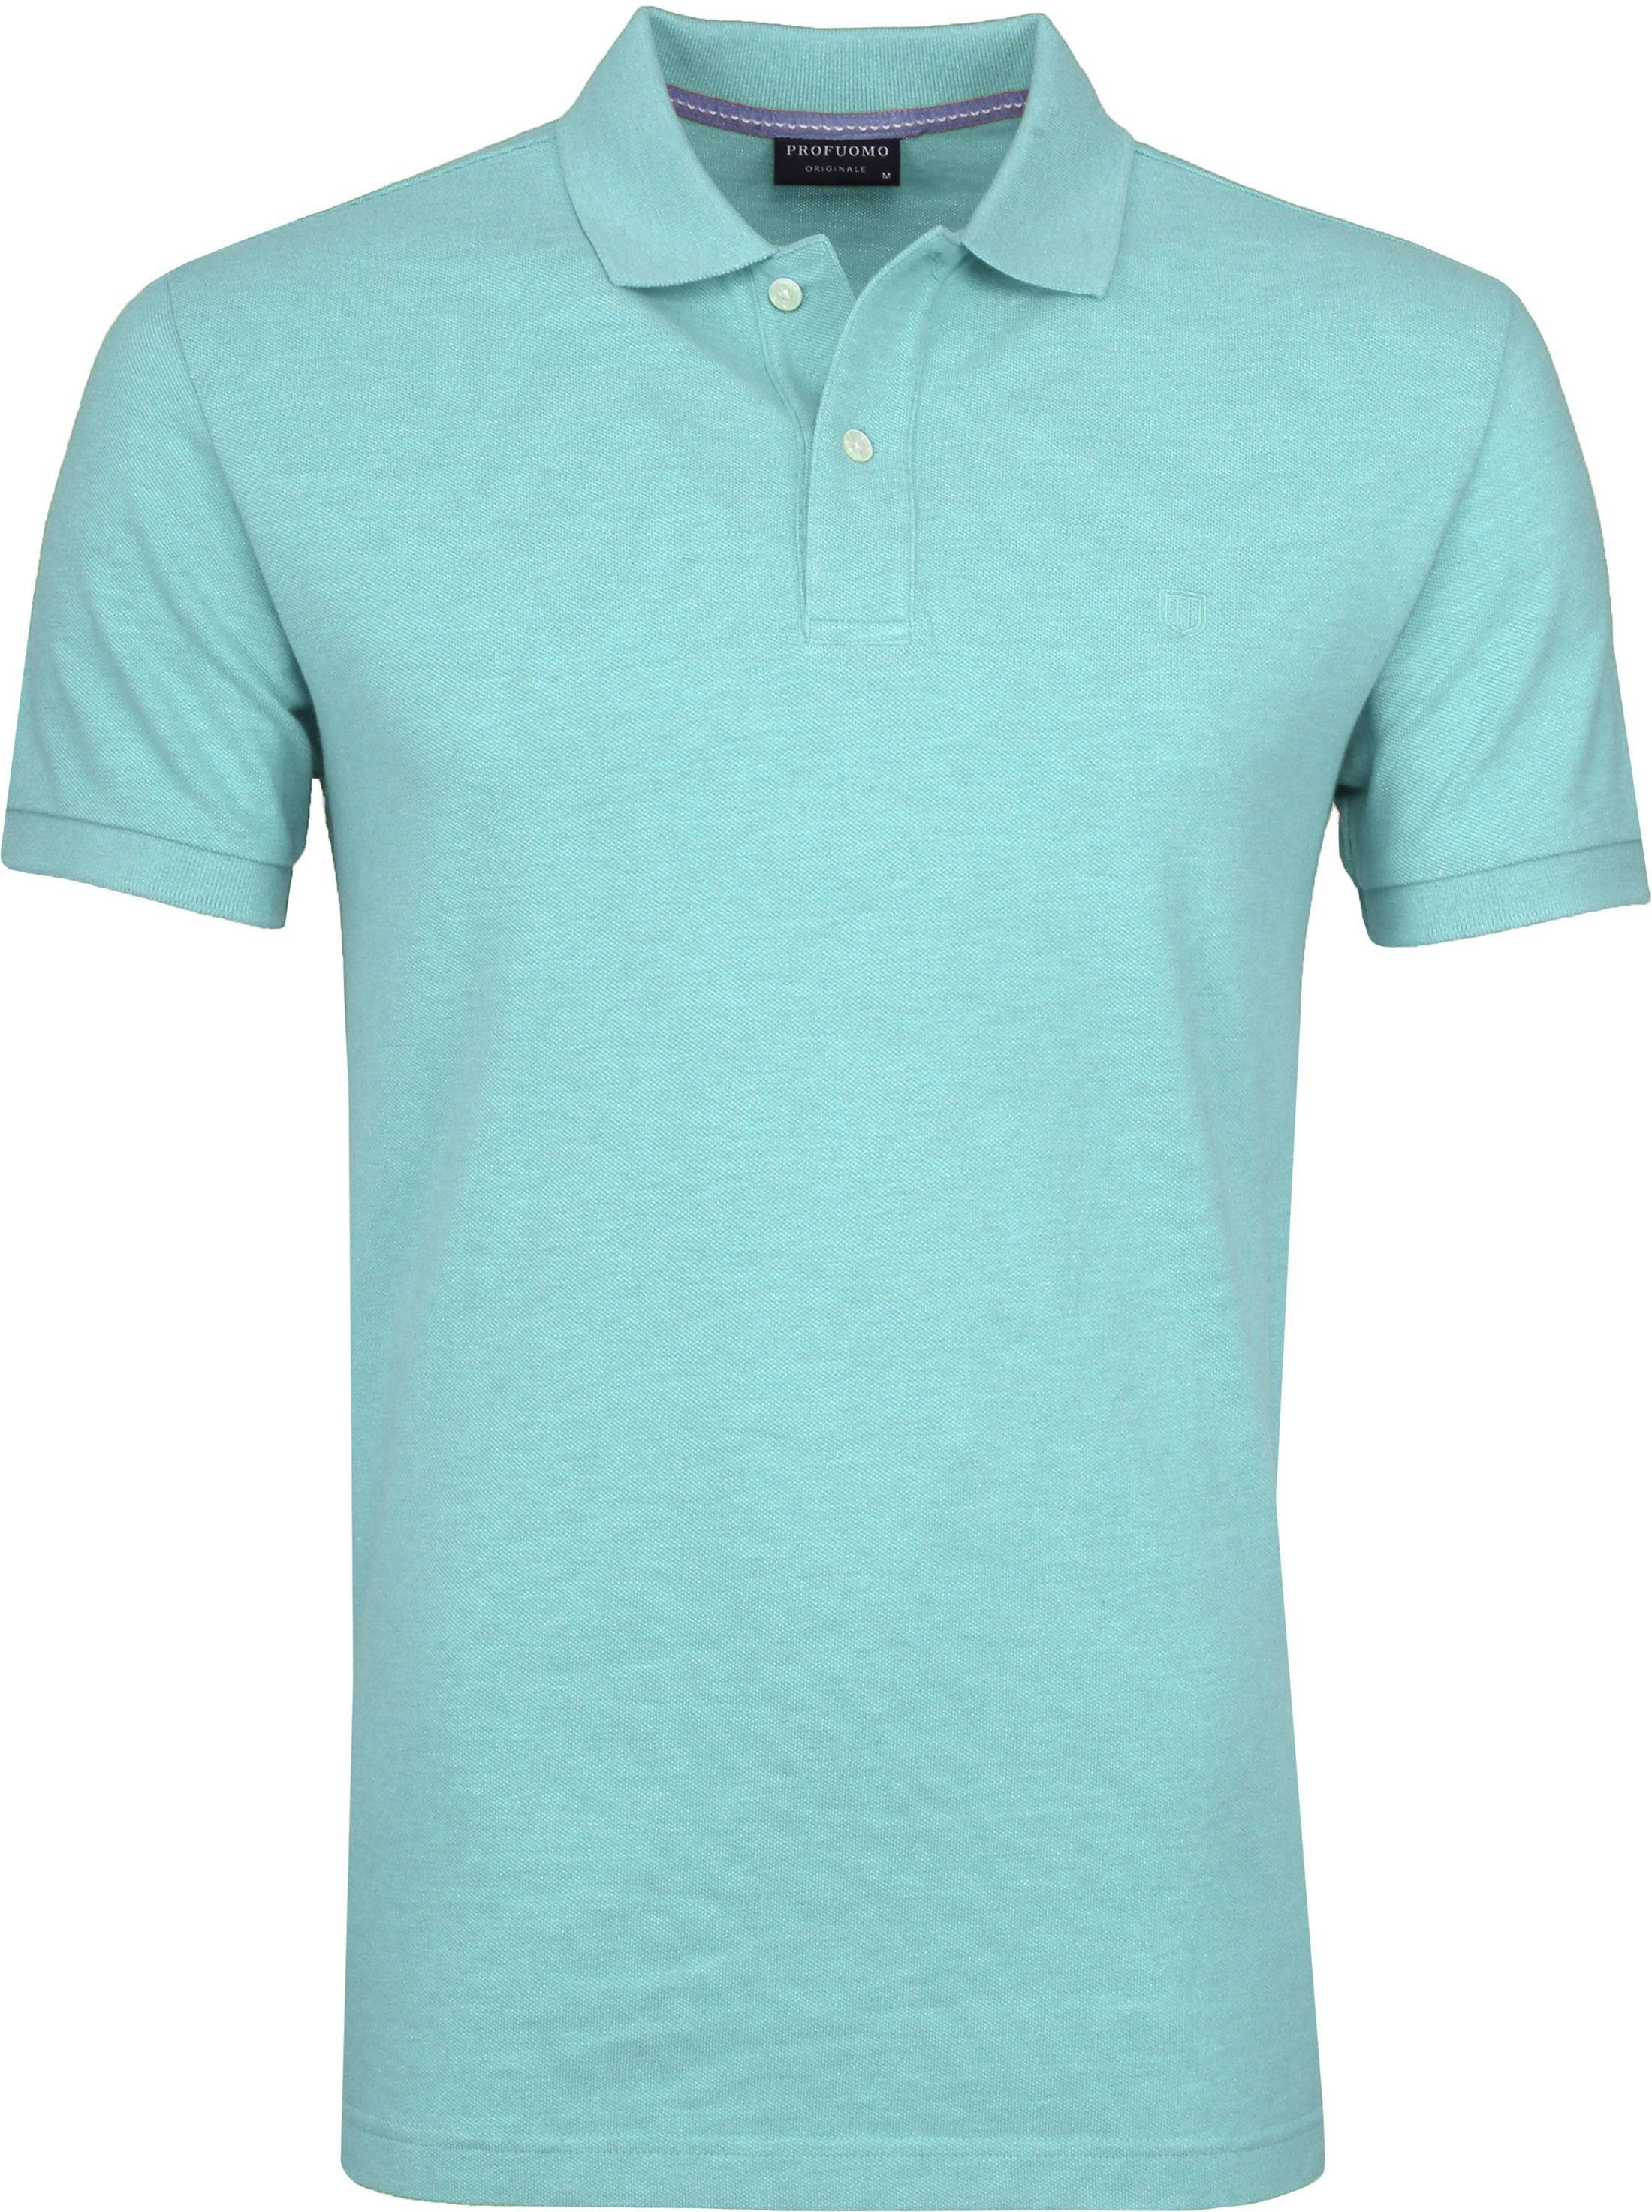 Profuomo Poloshirt Melange Turquoise size S